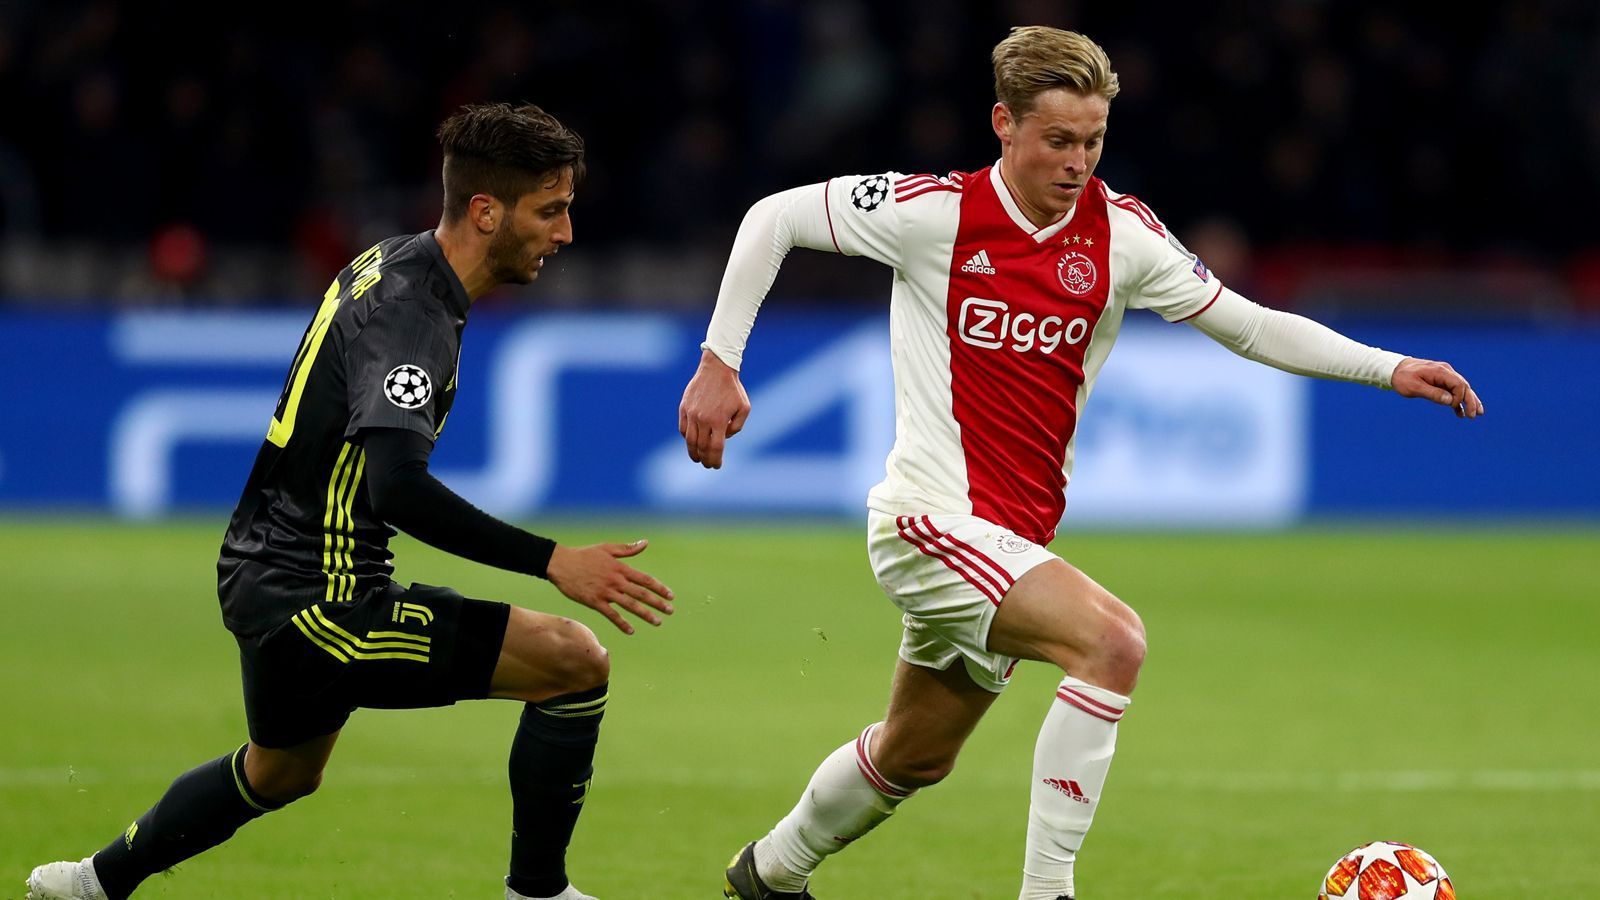 
                <strong>Platz 3: Ajax Amsterdam</strong><br>
                Würde es in diesem Power Ranking darum gehen, die Sympathien der neutralen Zuschauer für sich zu gewinnen, wäre Ajax wohl an der Spitze gelandet. Die junge Mannschaft von Trainer Erik ten Haag begeistert mit mutigem Offensivfußball und großem Kampfgeist. Im Achtelfinale schaltete Ajax sensationell Real Madrid aus und beendete damit die dreijährige Dominanz der Königlichen in der Champions League. Im Viertelfinale verzweifelte auch Cristiano Ronaldo mit Juventus Turin an den Niederländern. Besonders in den Rückspielen in der Fremde präsentiert sich Ajax stark. Zuerst wurde Real mit 4:1 im eigenen Stadion gedemütigt, dann erkämpften sich die Niederländer ein 2:1 in Turin.   
              